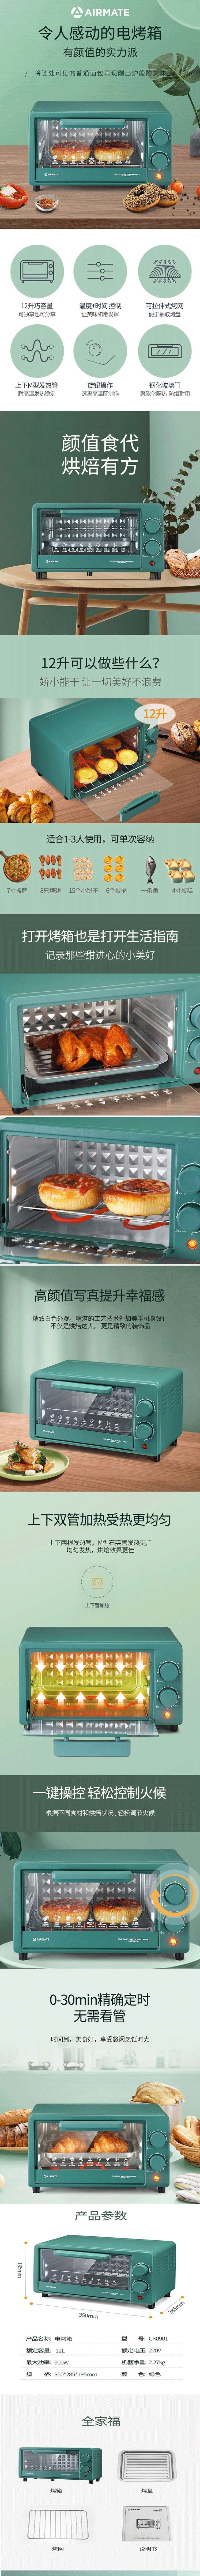 艾美特/AIRMATE 网红电烤箱CK0901